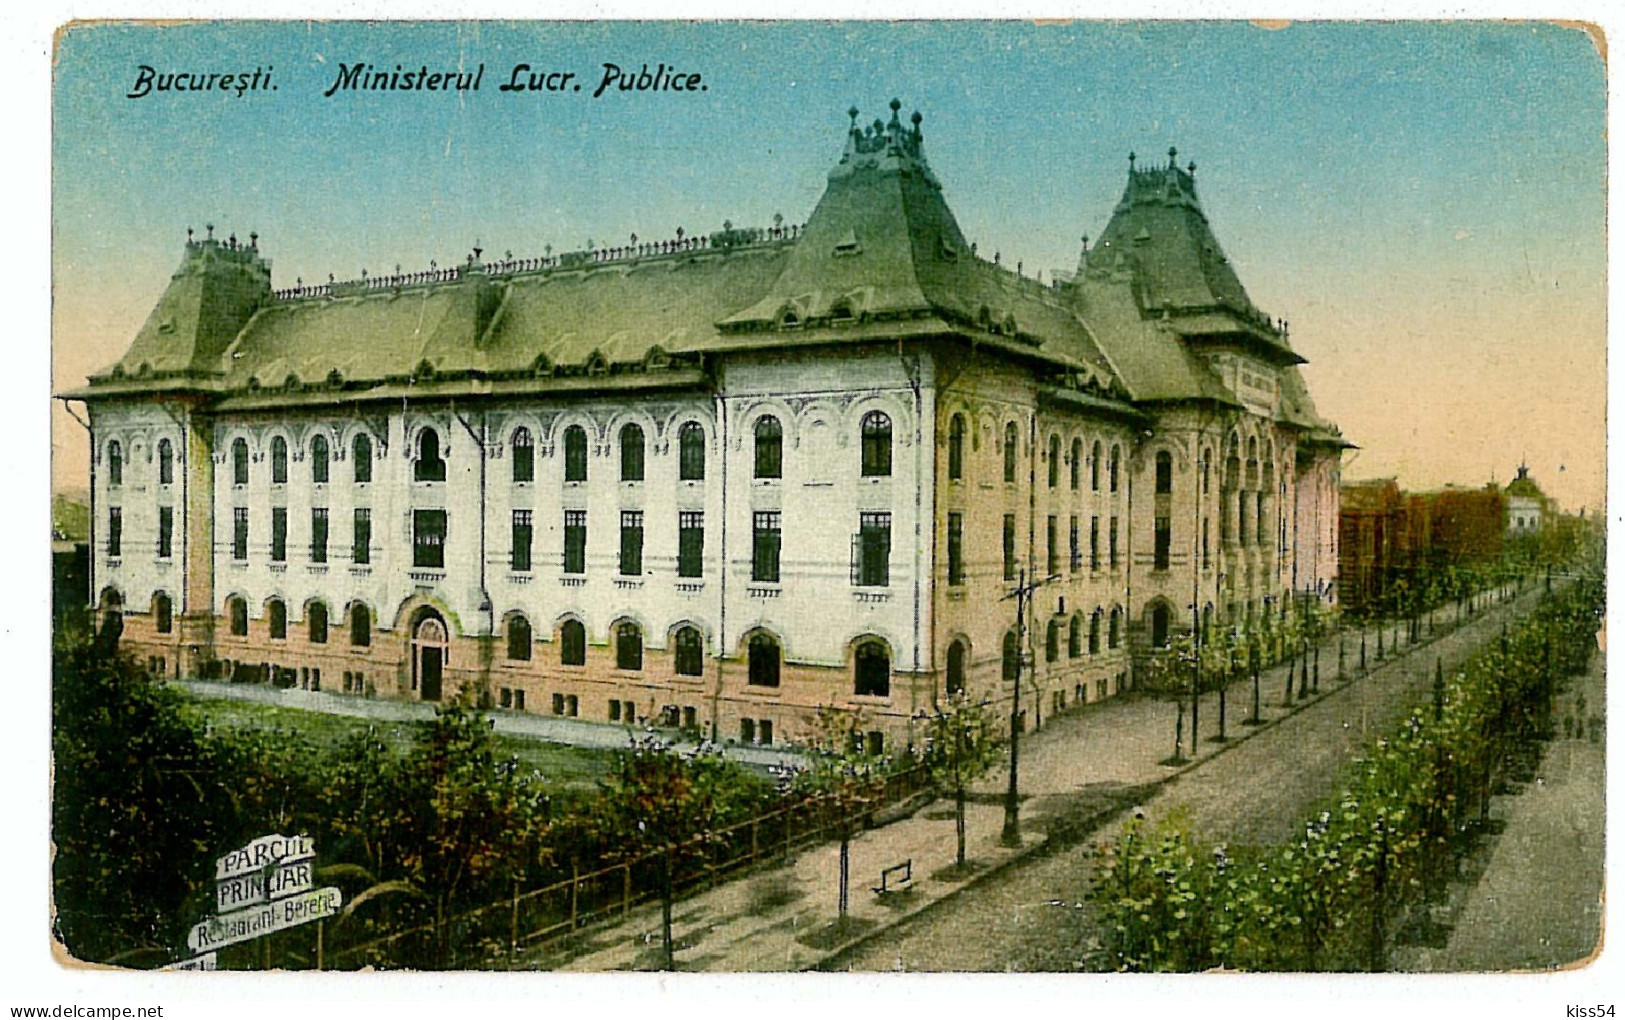 RO 82 - 1311 BUCURESTI, Ministerul Lucrarilor Publice, Romania - Old Postcard - Unused - Roumanie